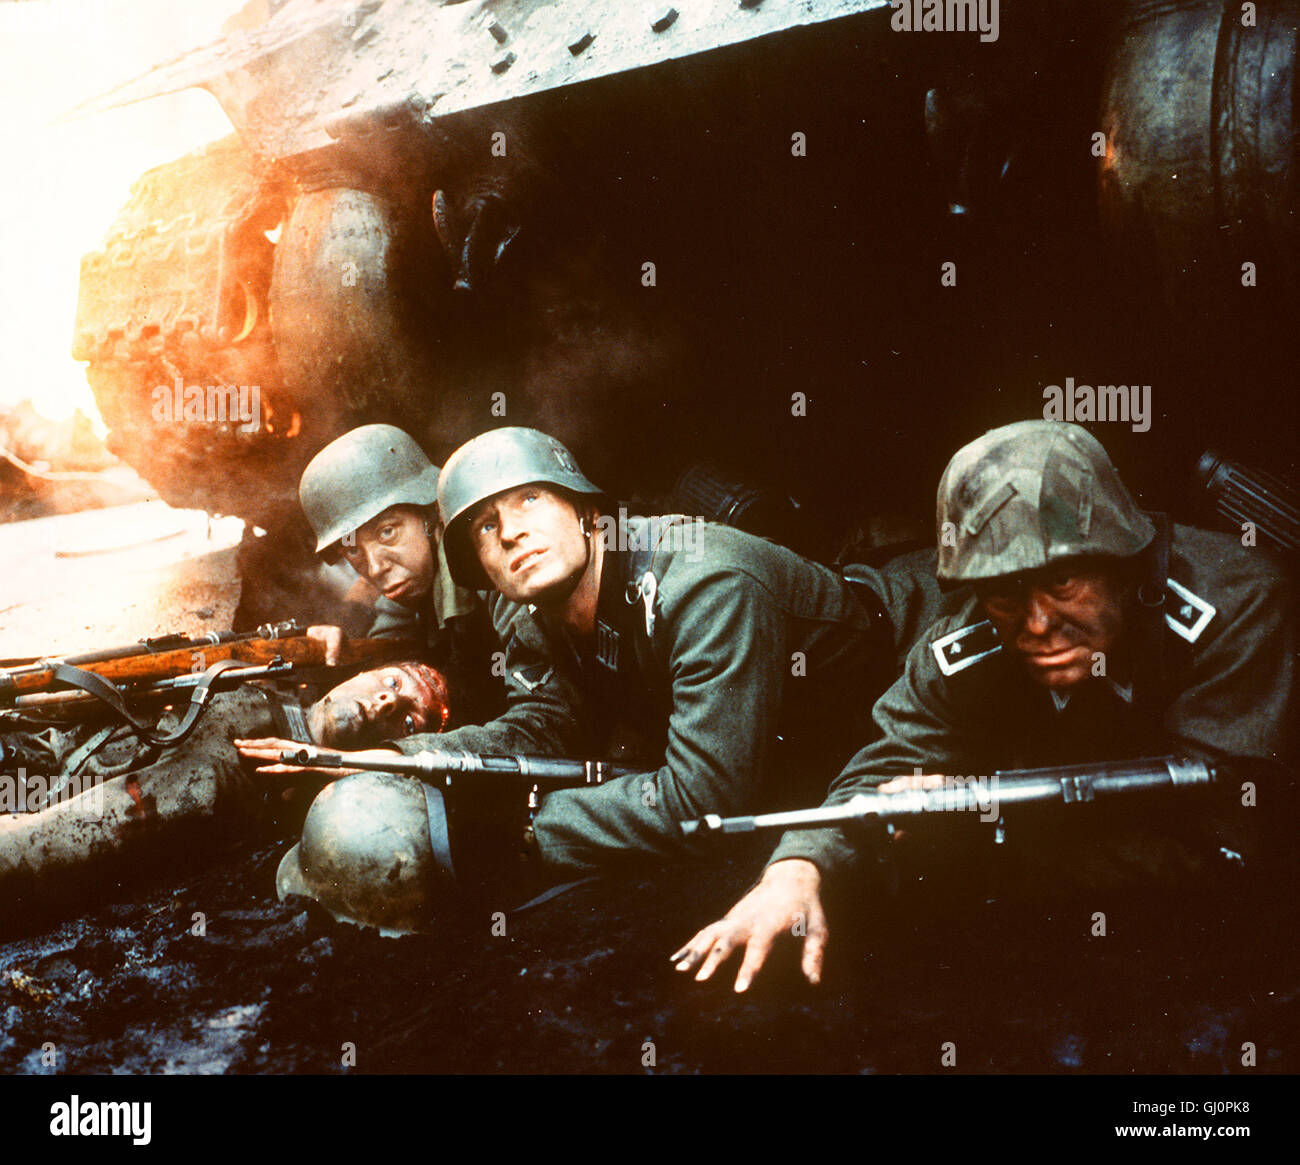 STALINGRAD- Ein Sturmbataillon der Wehrmacht wird im Sommer 1942 nach Rußland abkommandiert und in die Schlacht um die Industriestadt geschickt, Während die deutschen Soldaten sich in mörderischen Häuserkämpfen aufreiben, umzingelt die Rote Armee die Stadt. Eine versprengte Gruppe Überlebender versucht zu desertieren. v.l.n.r: HEINZ EMIGHOLZ, Leutnant Hans von Witzland (THOMAS KRETSCHMANN) und SVATOPLUK RICANEK. Regie: Joseph Vilsmaier Stock Photo